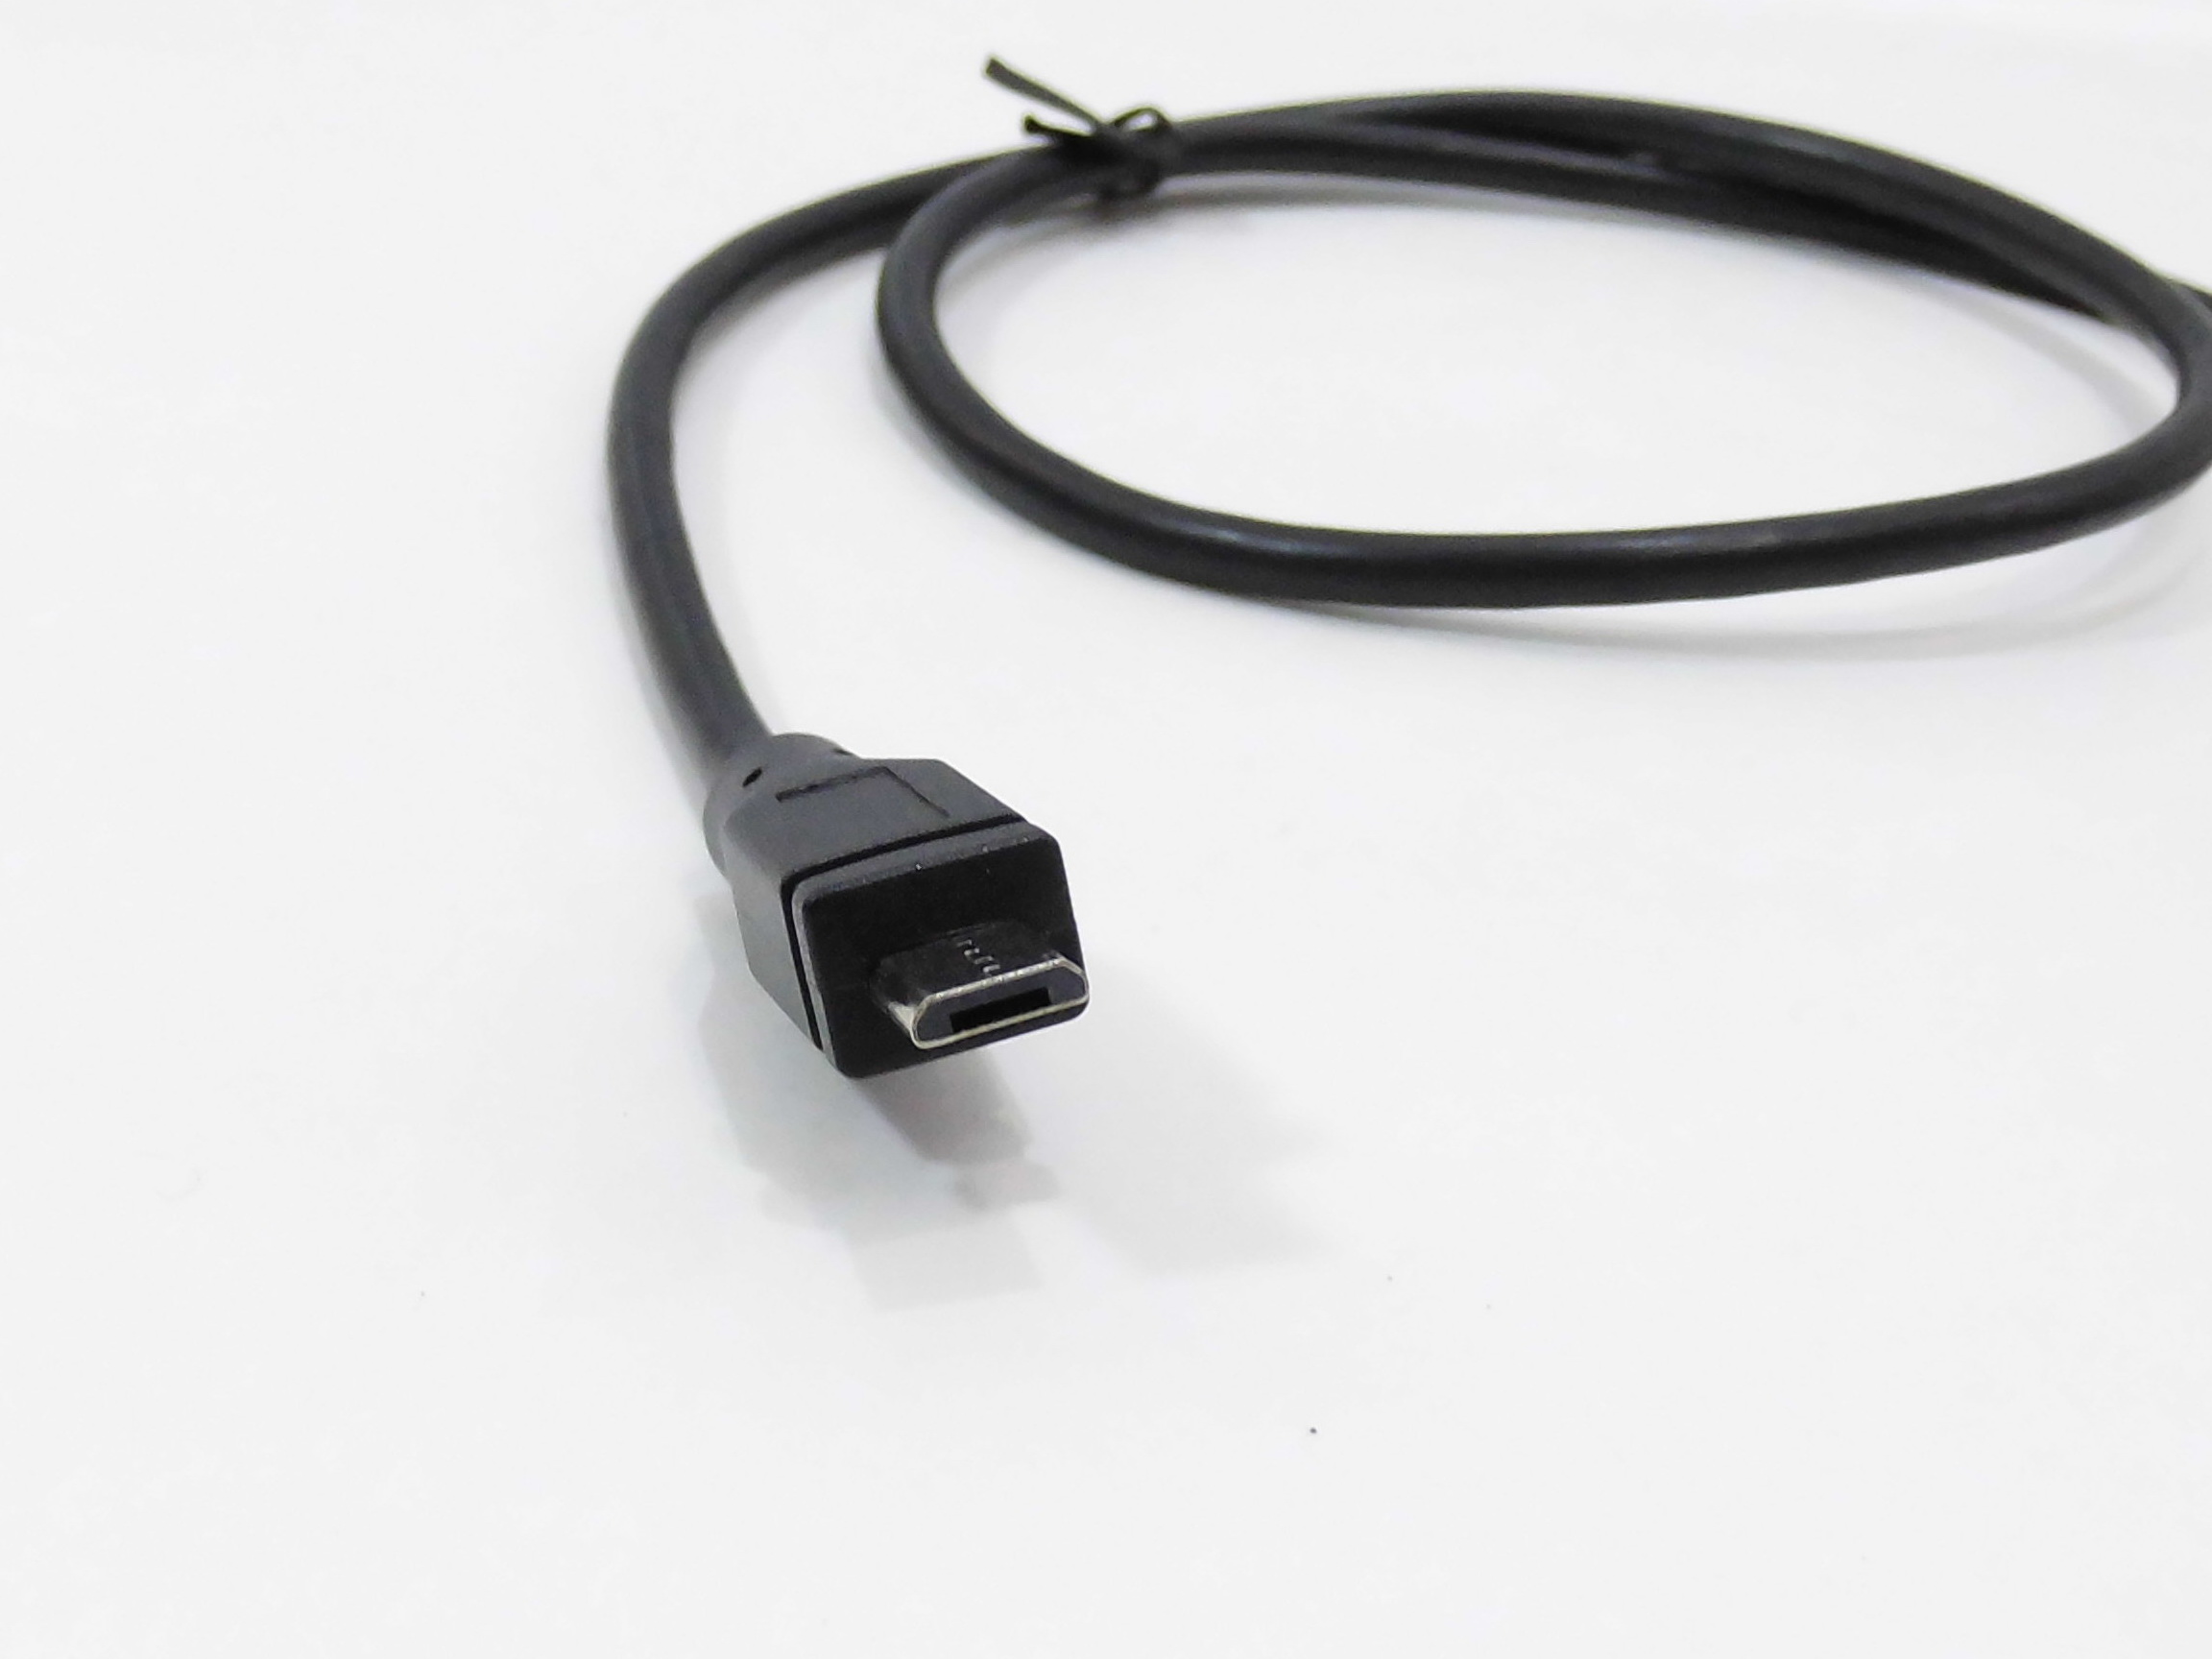 Прошивка микро. Кабель Micro USB 0.5 метра. Кабель Micro USB удлинённый для китайских. USB-Micro кабель Micro для прошивки esp32 купить.